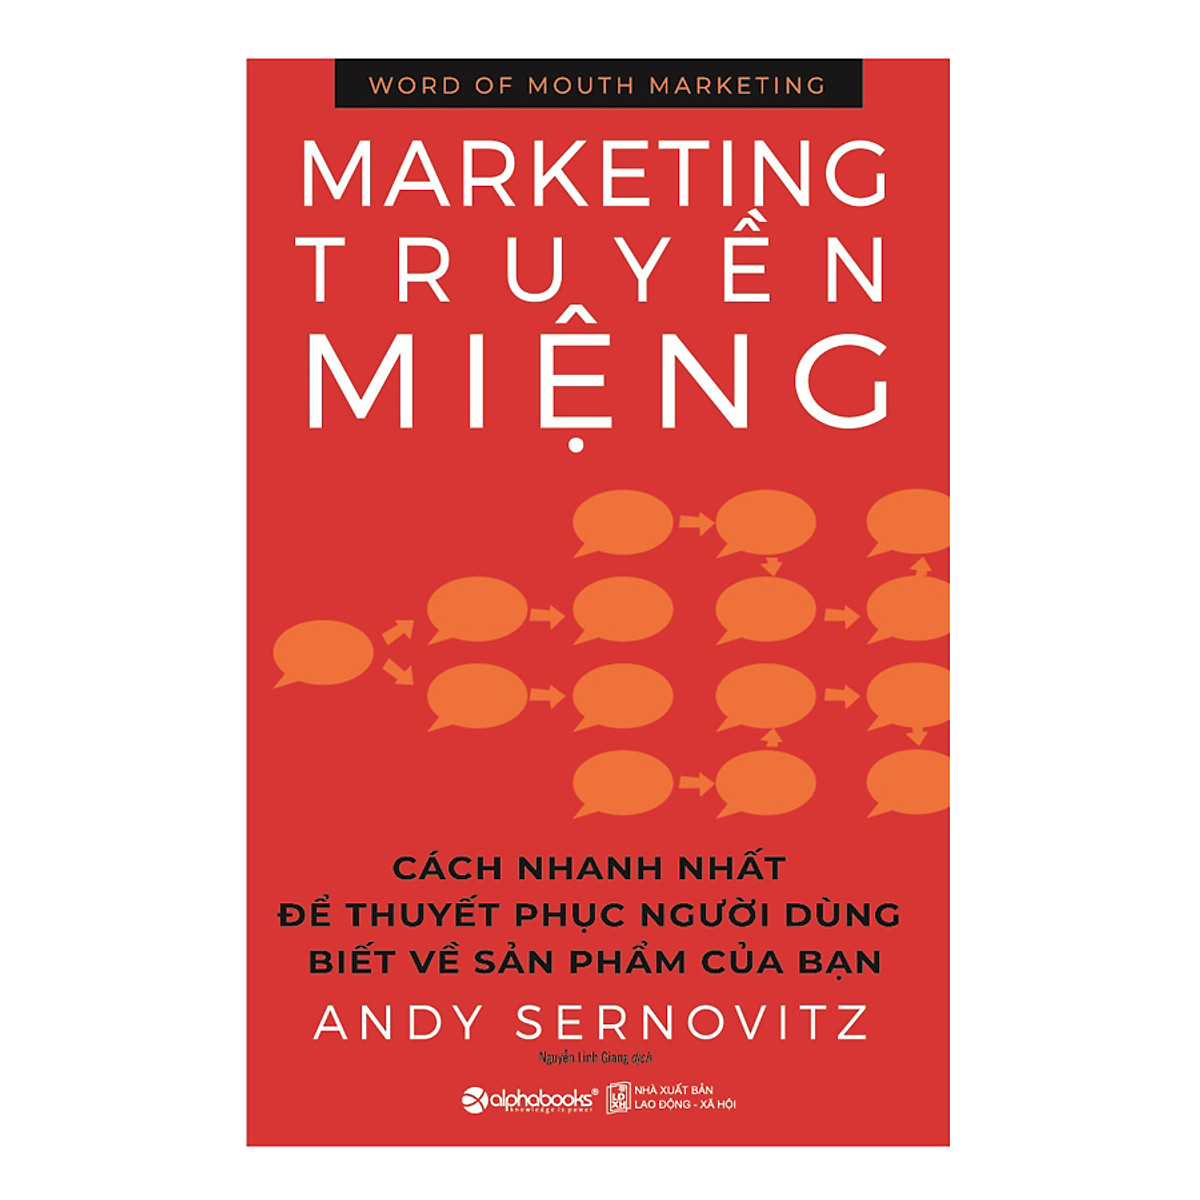 Combo 2 cuốn sách: 1001 ý Tưởng Đột Phá Trong Quảng Cáo + Marketing Truyền Miệng